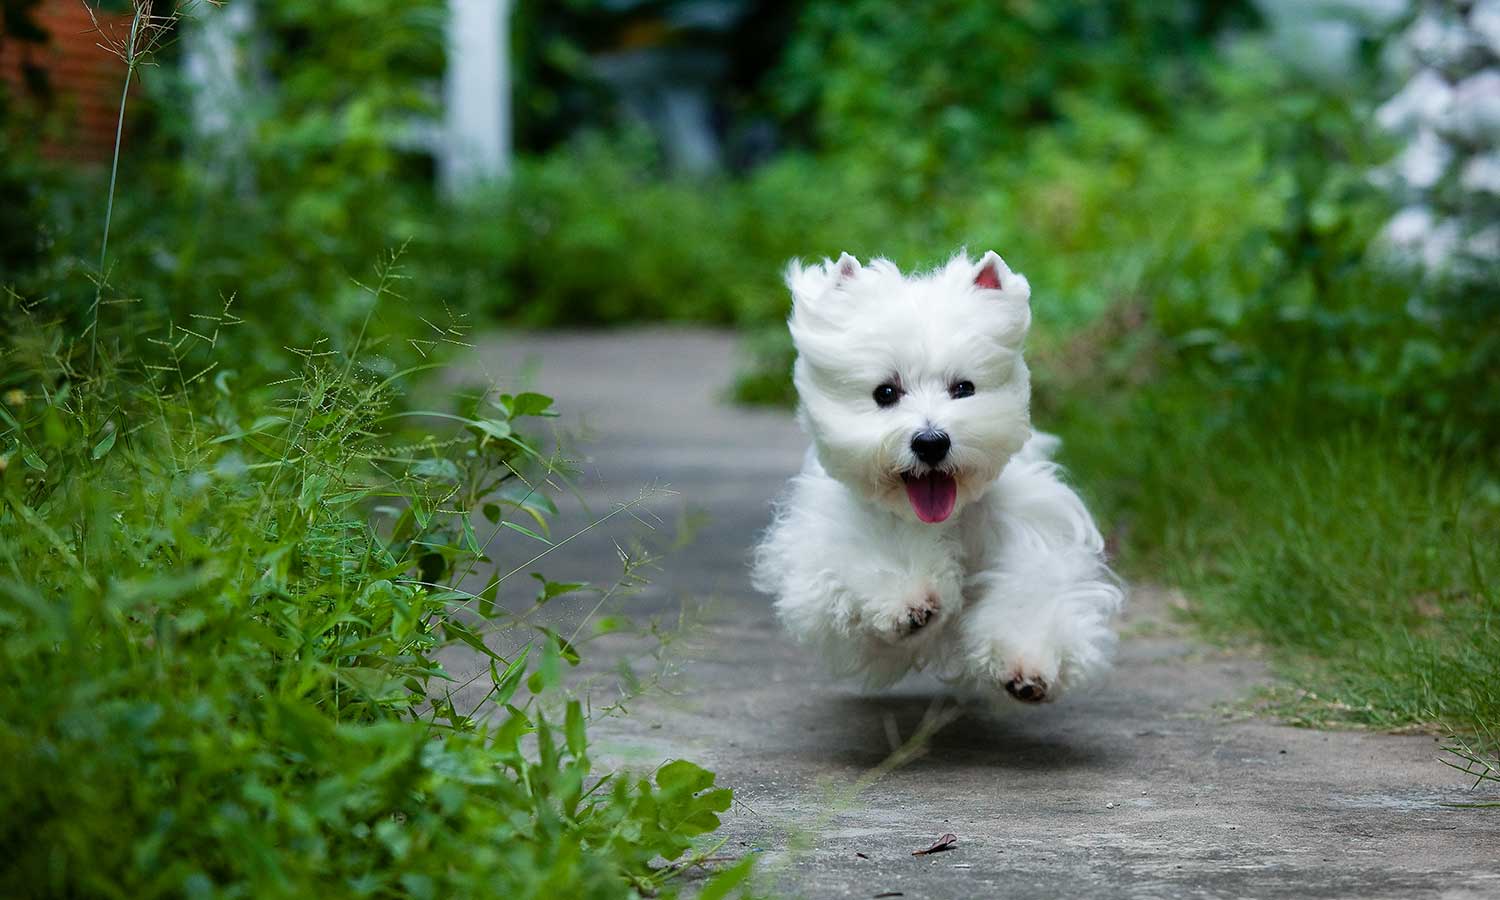 A white dog running through a garden